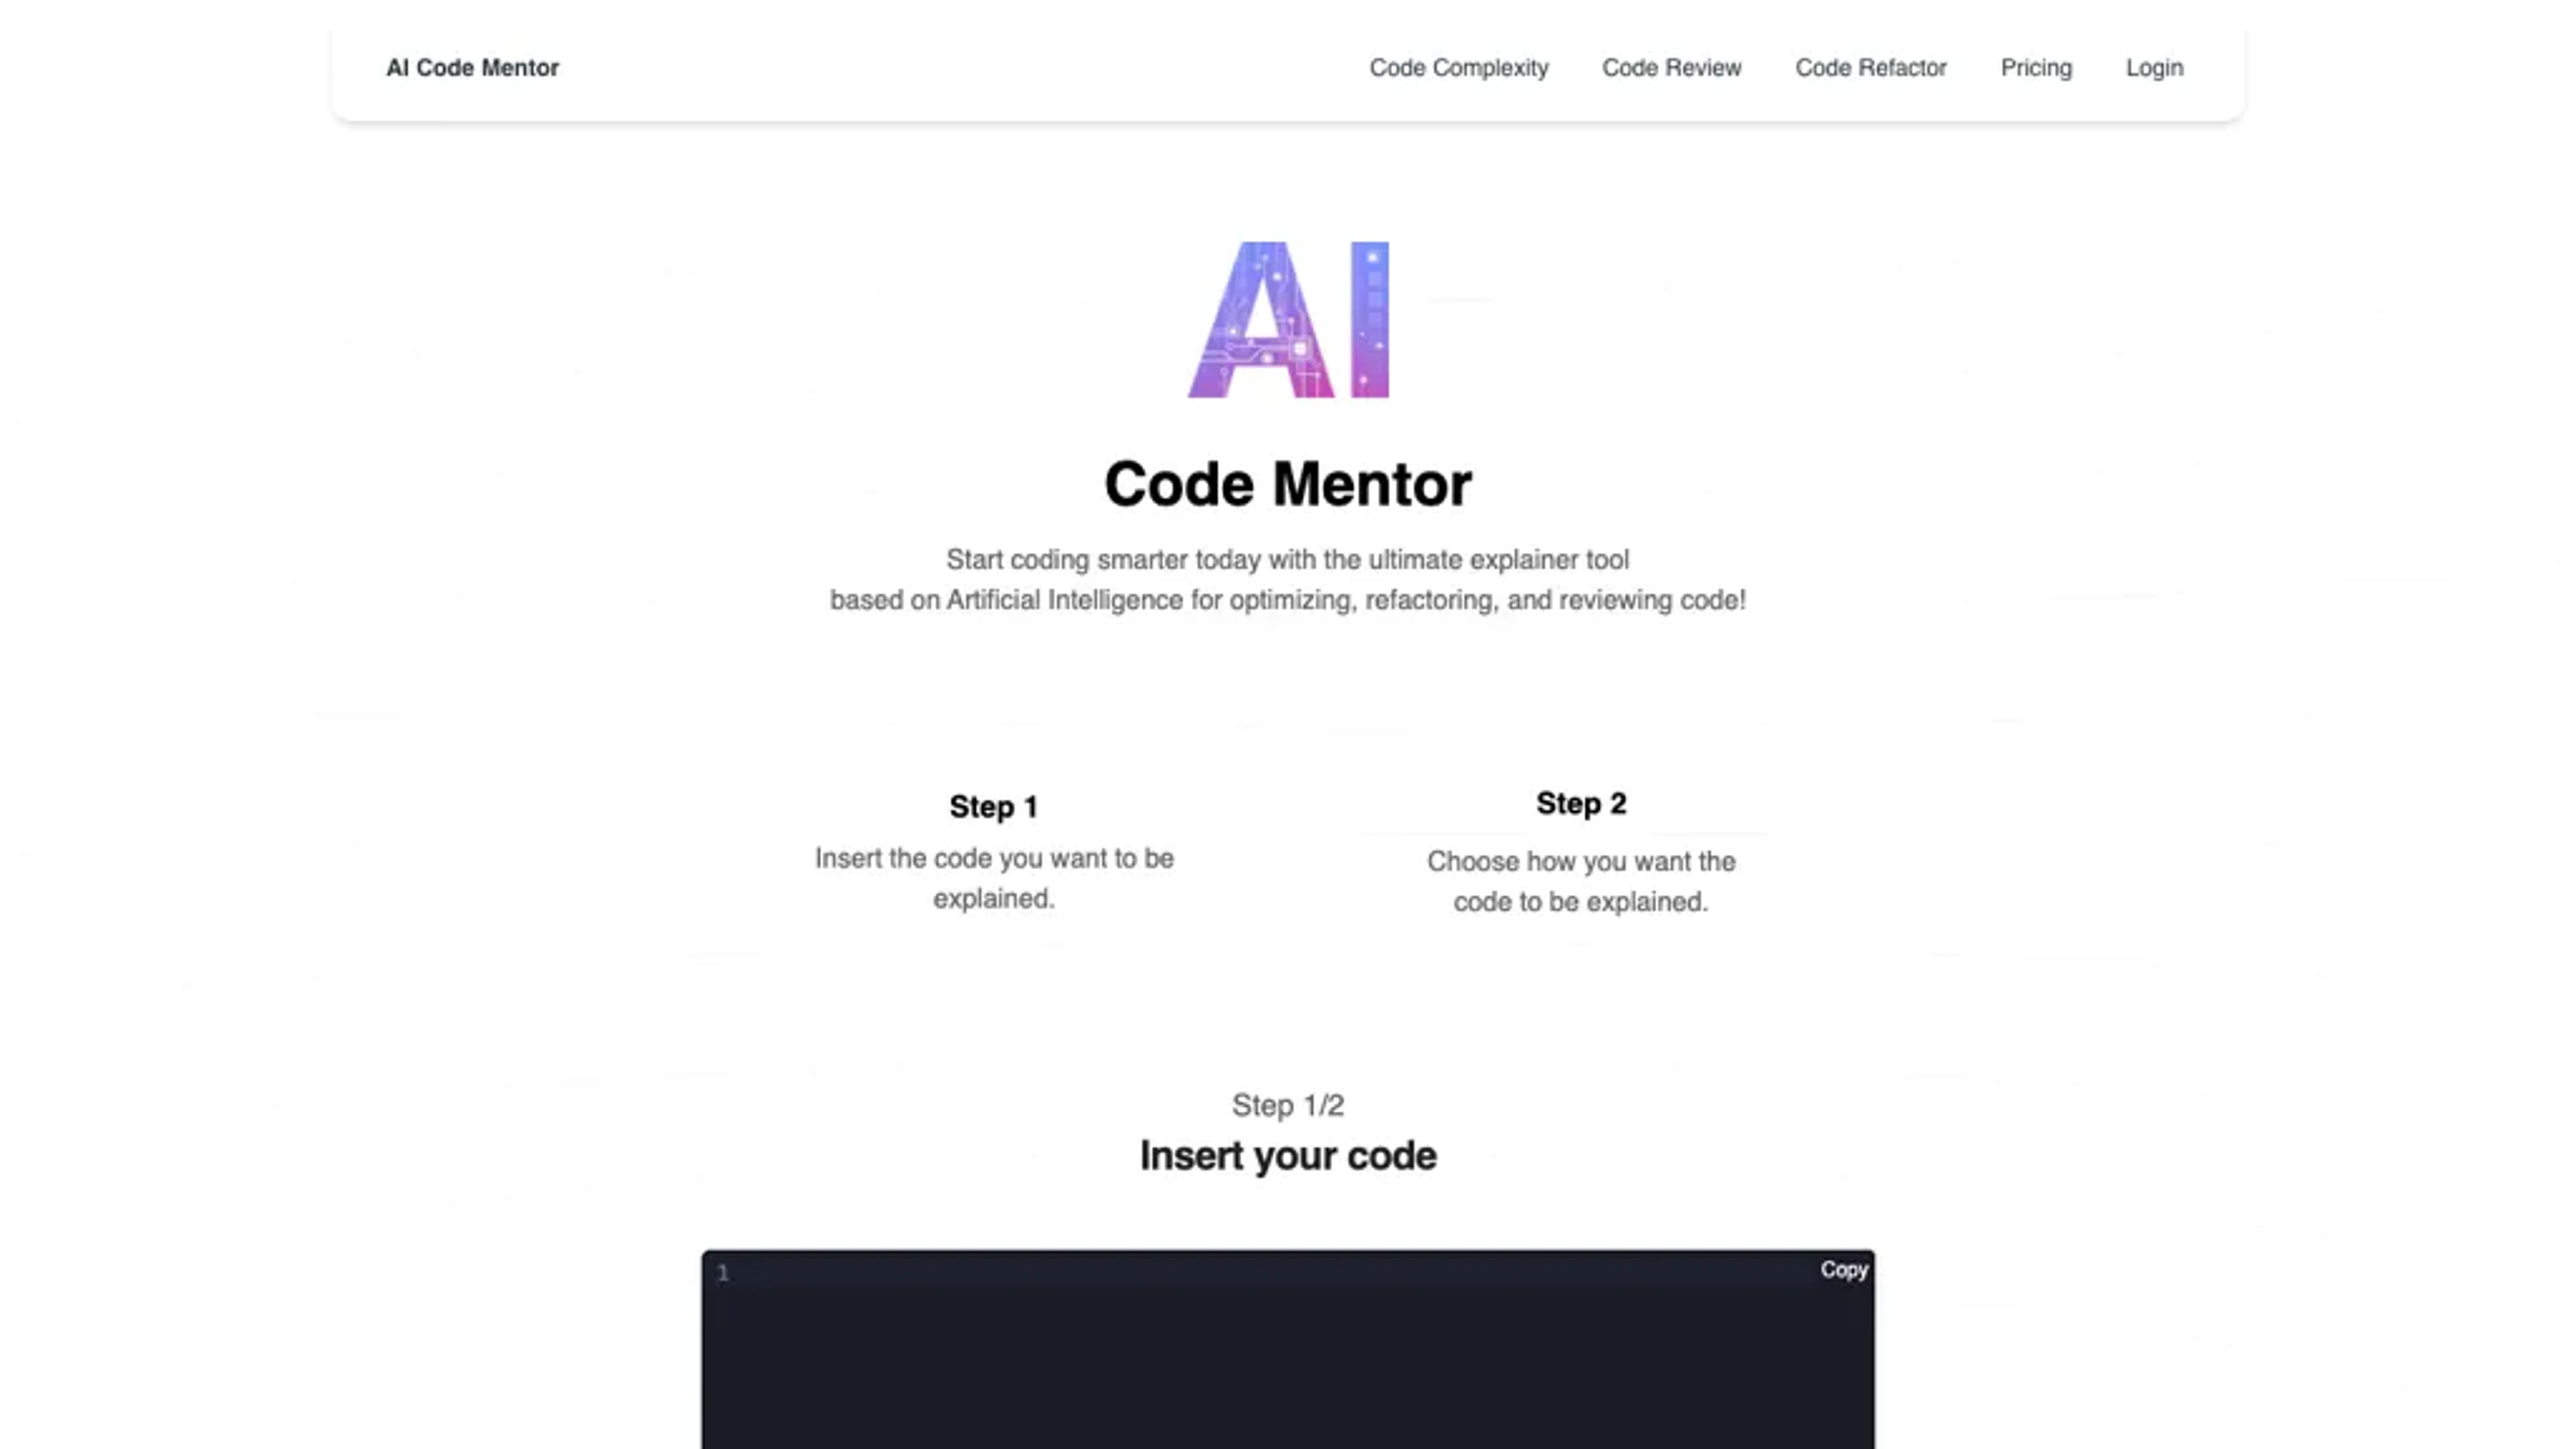 AI Code Mentor